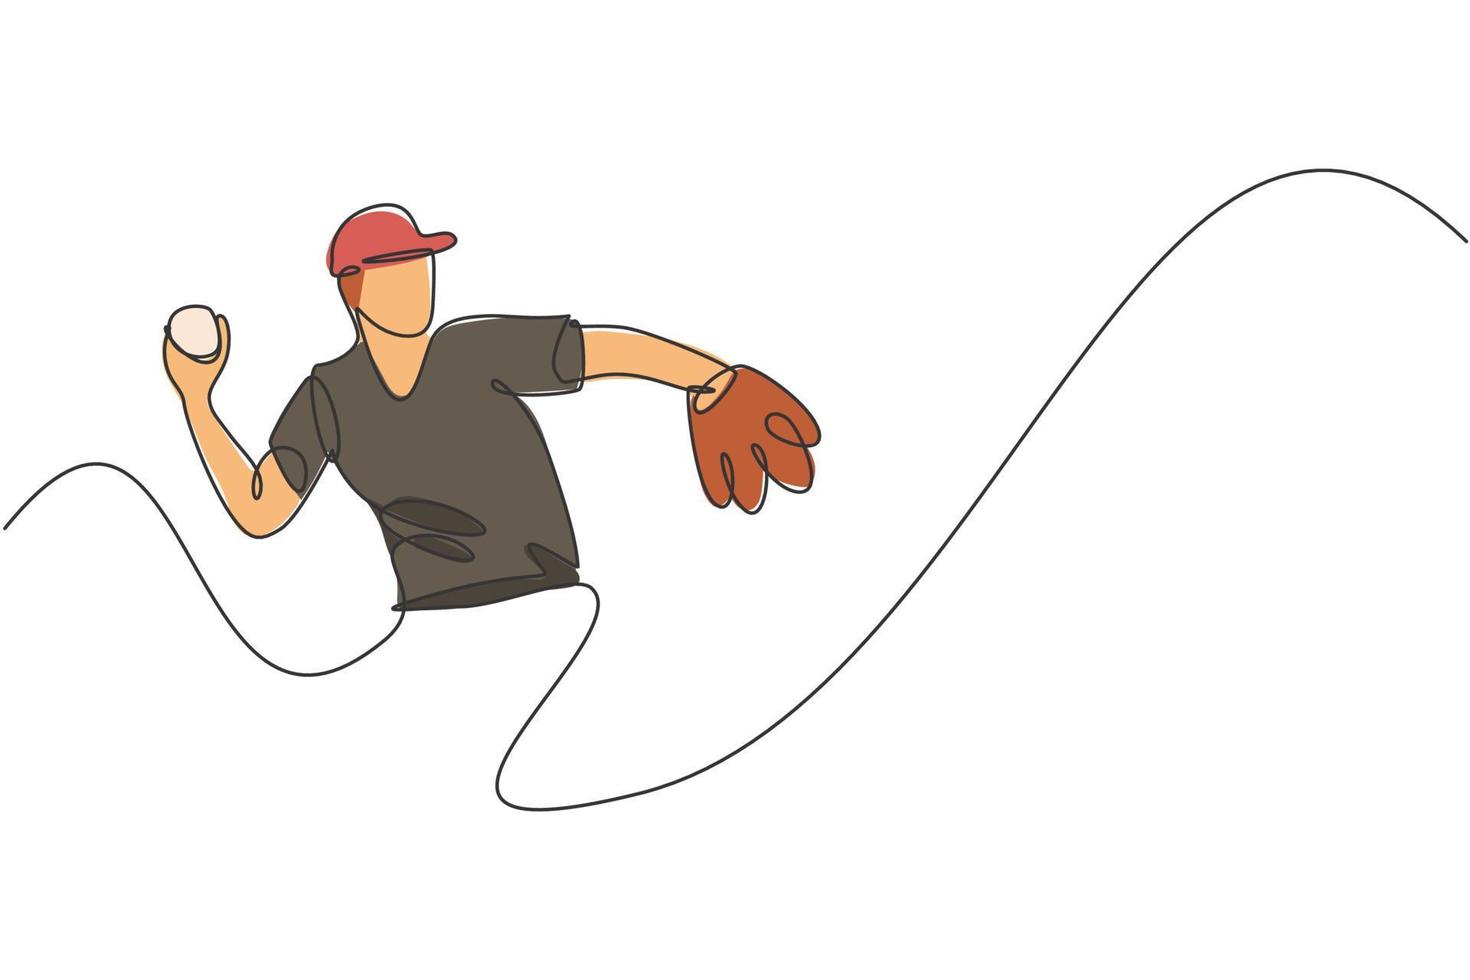 un disegno a linea continua di un giovane sportivo, giocatore di baseball, pratica di messa a fuoco per lanciare la palla. concetto di sport competitivo. illustrazione vettoriale di disegno dinamico a linea singola per poster di promozione